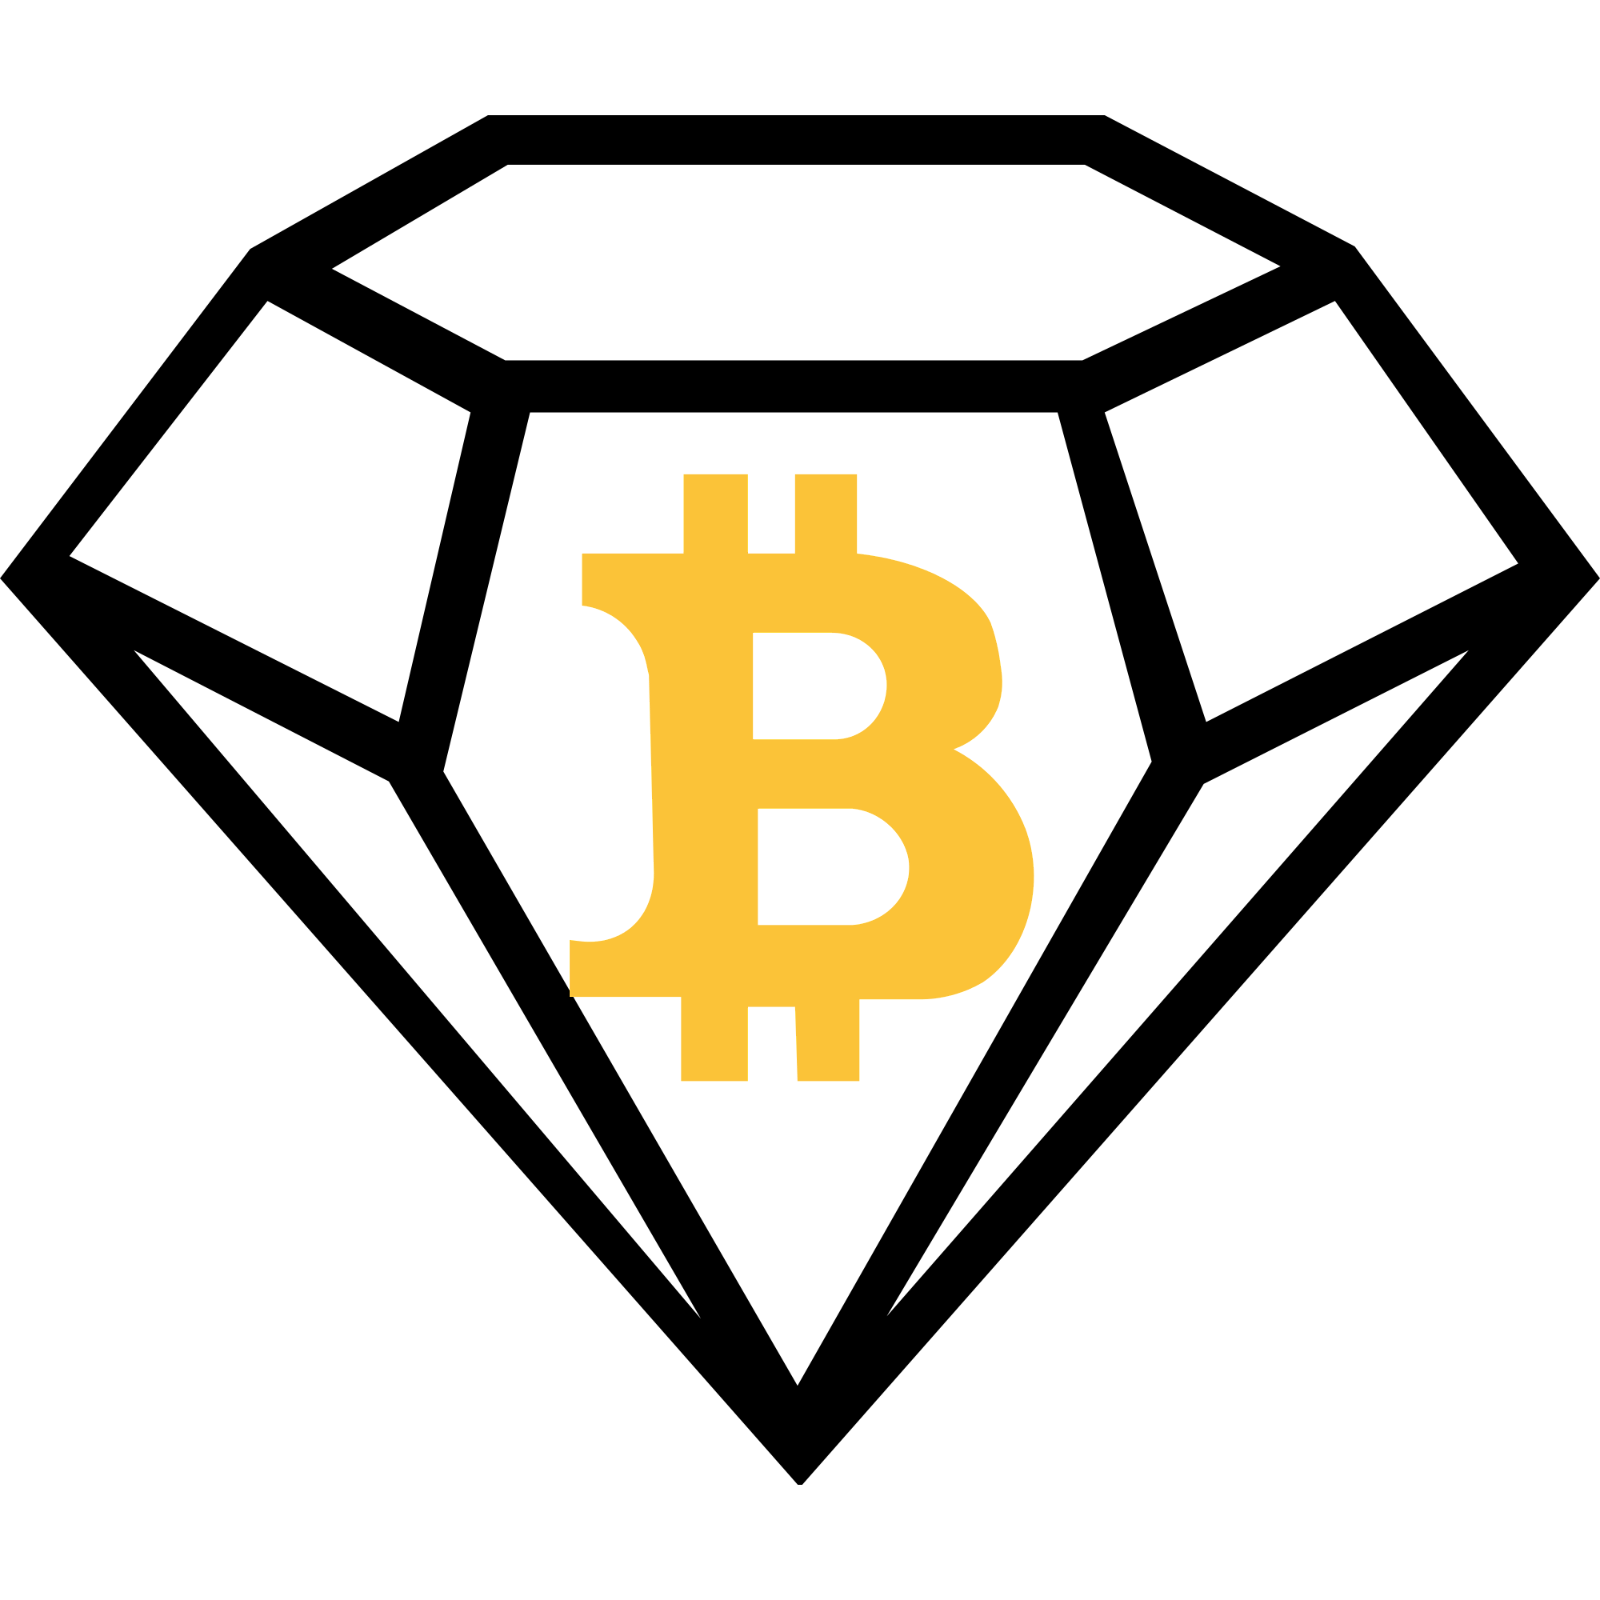 Bitcoin Diamond Logo